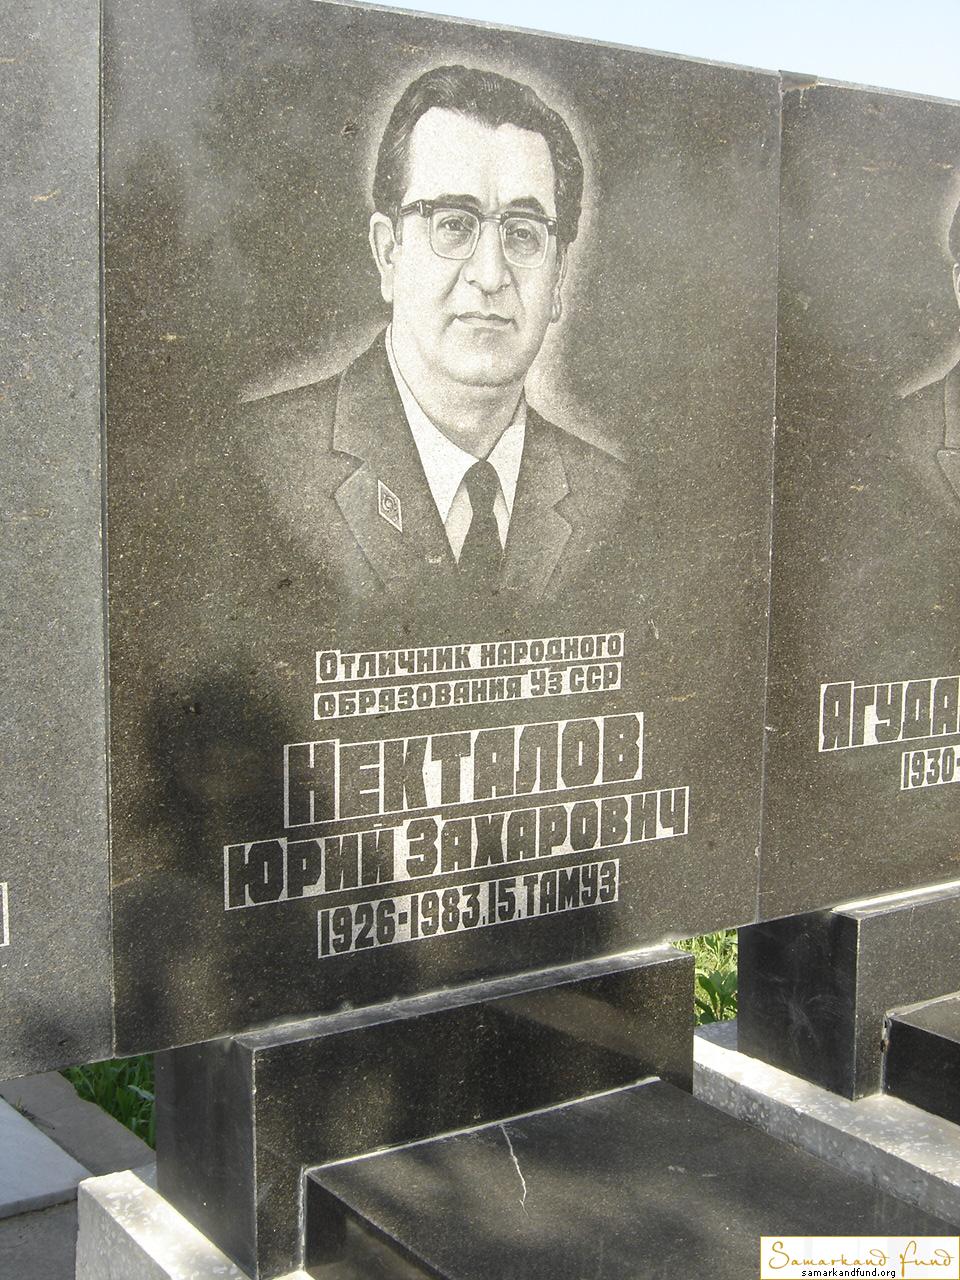 Некталов Юрий Захарович  1926 - 1983 зах.  55.64 №12.JPG